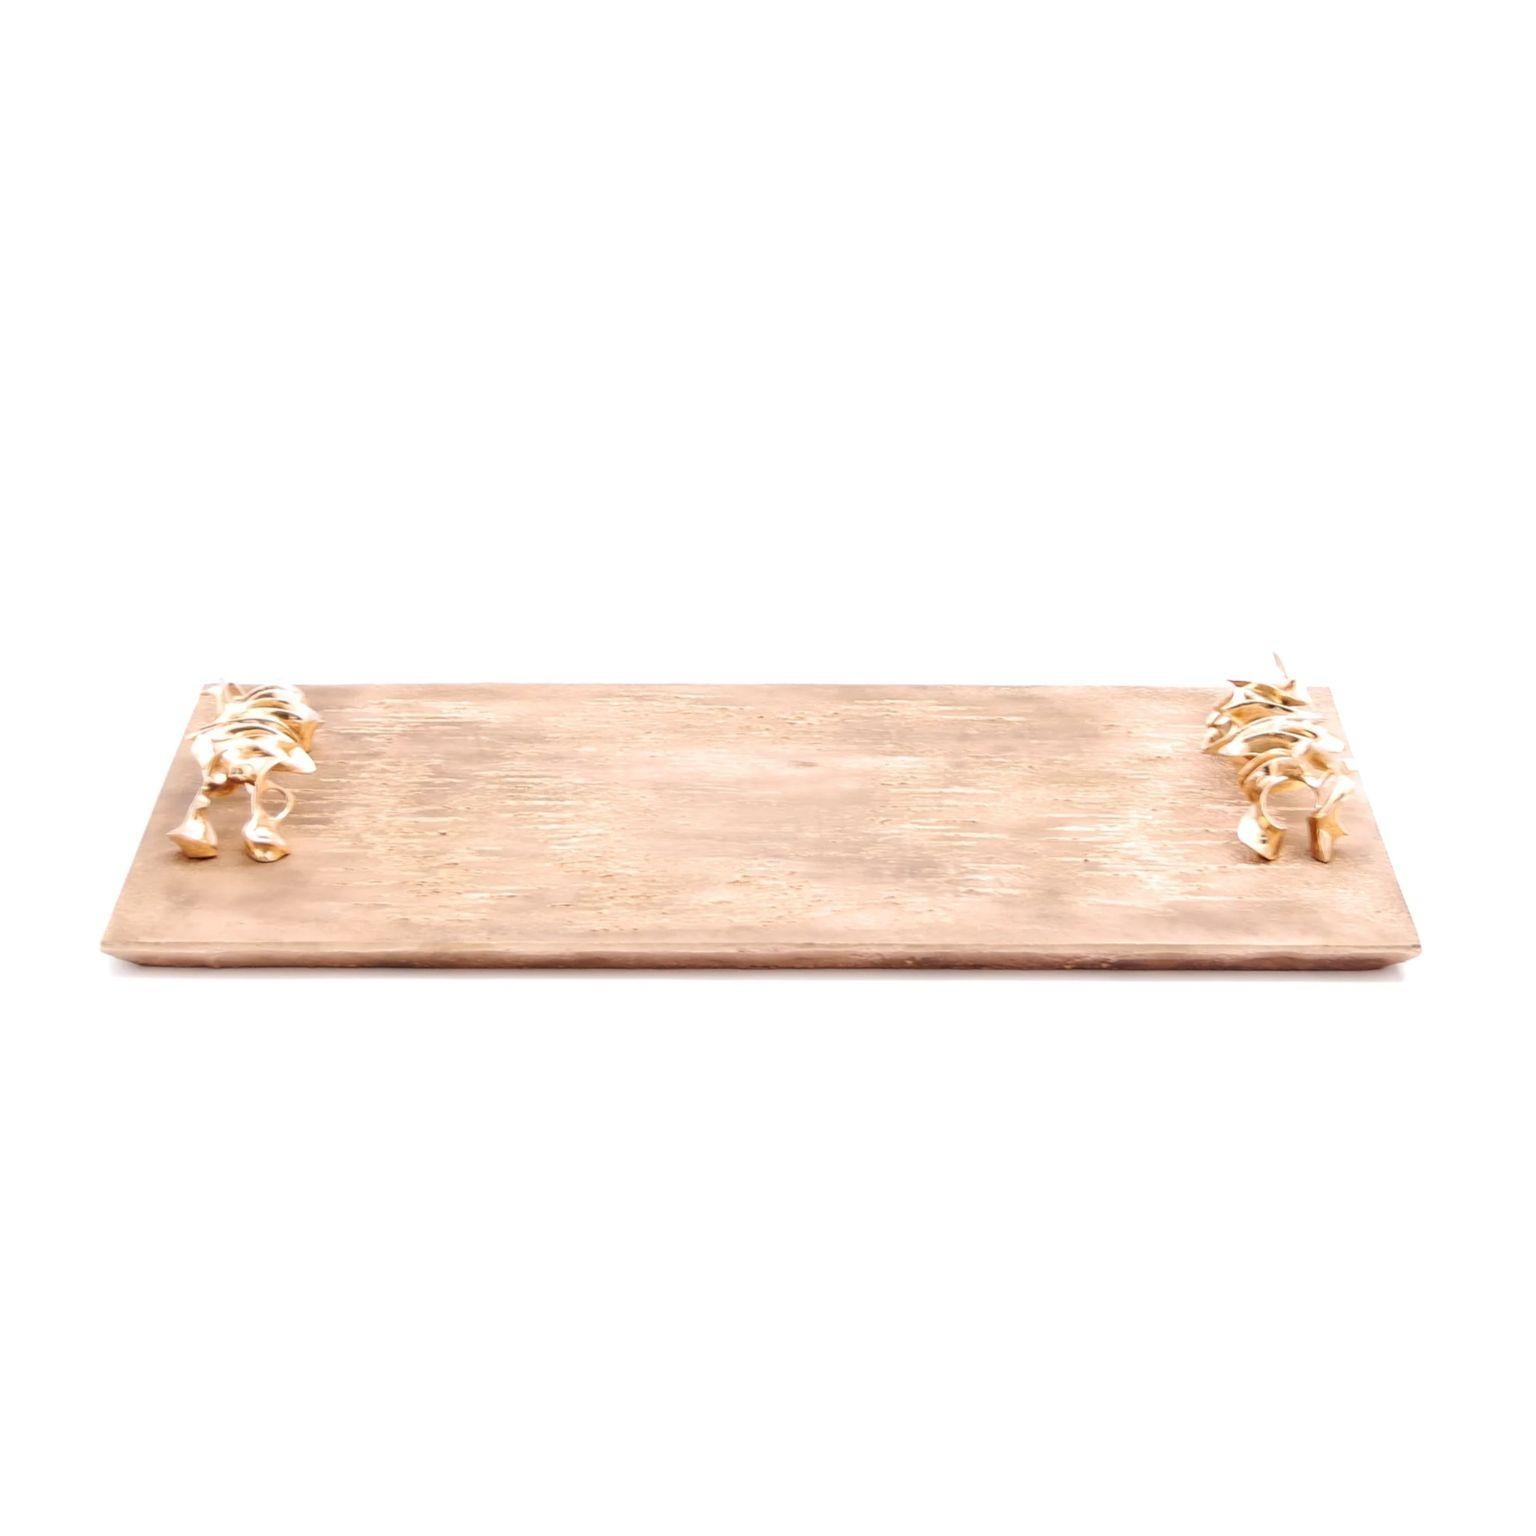 Mariae Bar-Tablett von Fakasaka Design
Abmessungen: B 63 cm T 37 cm H 7 cm.
MATERIAL: polierte Bronze.

 FAKASAKA ist ein Designunternehmen, das sich auf die Herstellung von hochwertigen Möbeln, Leuchten, Dekorationsobjekten, Juwelen und